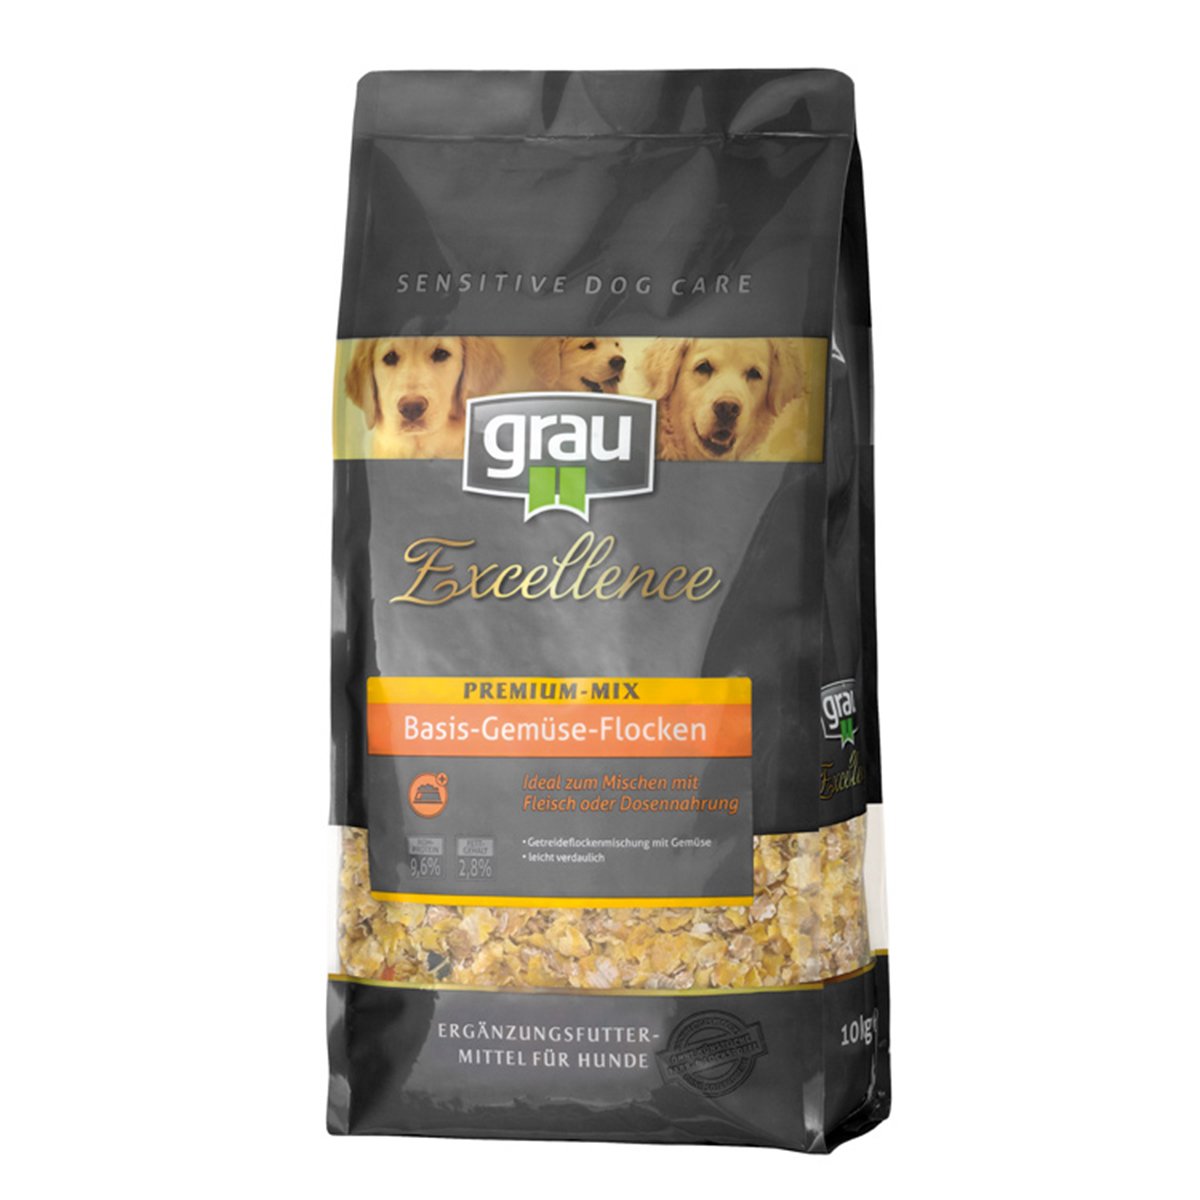 Grau Excellence Hunde-Trockenfutter Premium-Mix Basis-Gemüse-Flocken 2x10kg von Grau